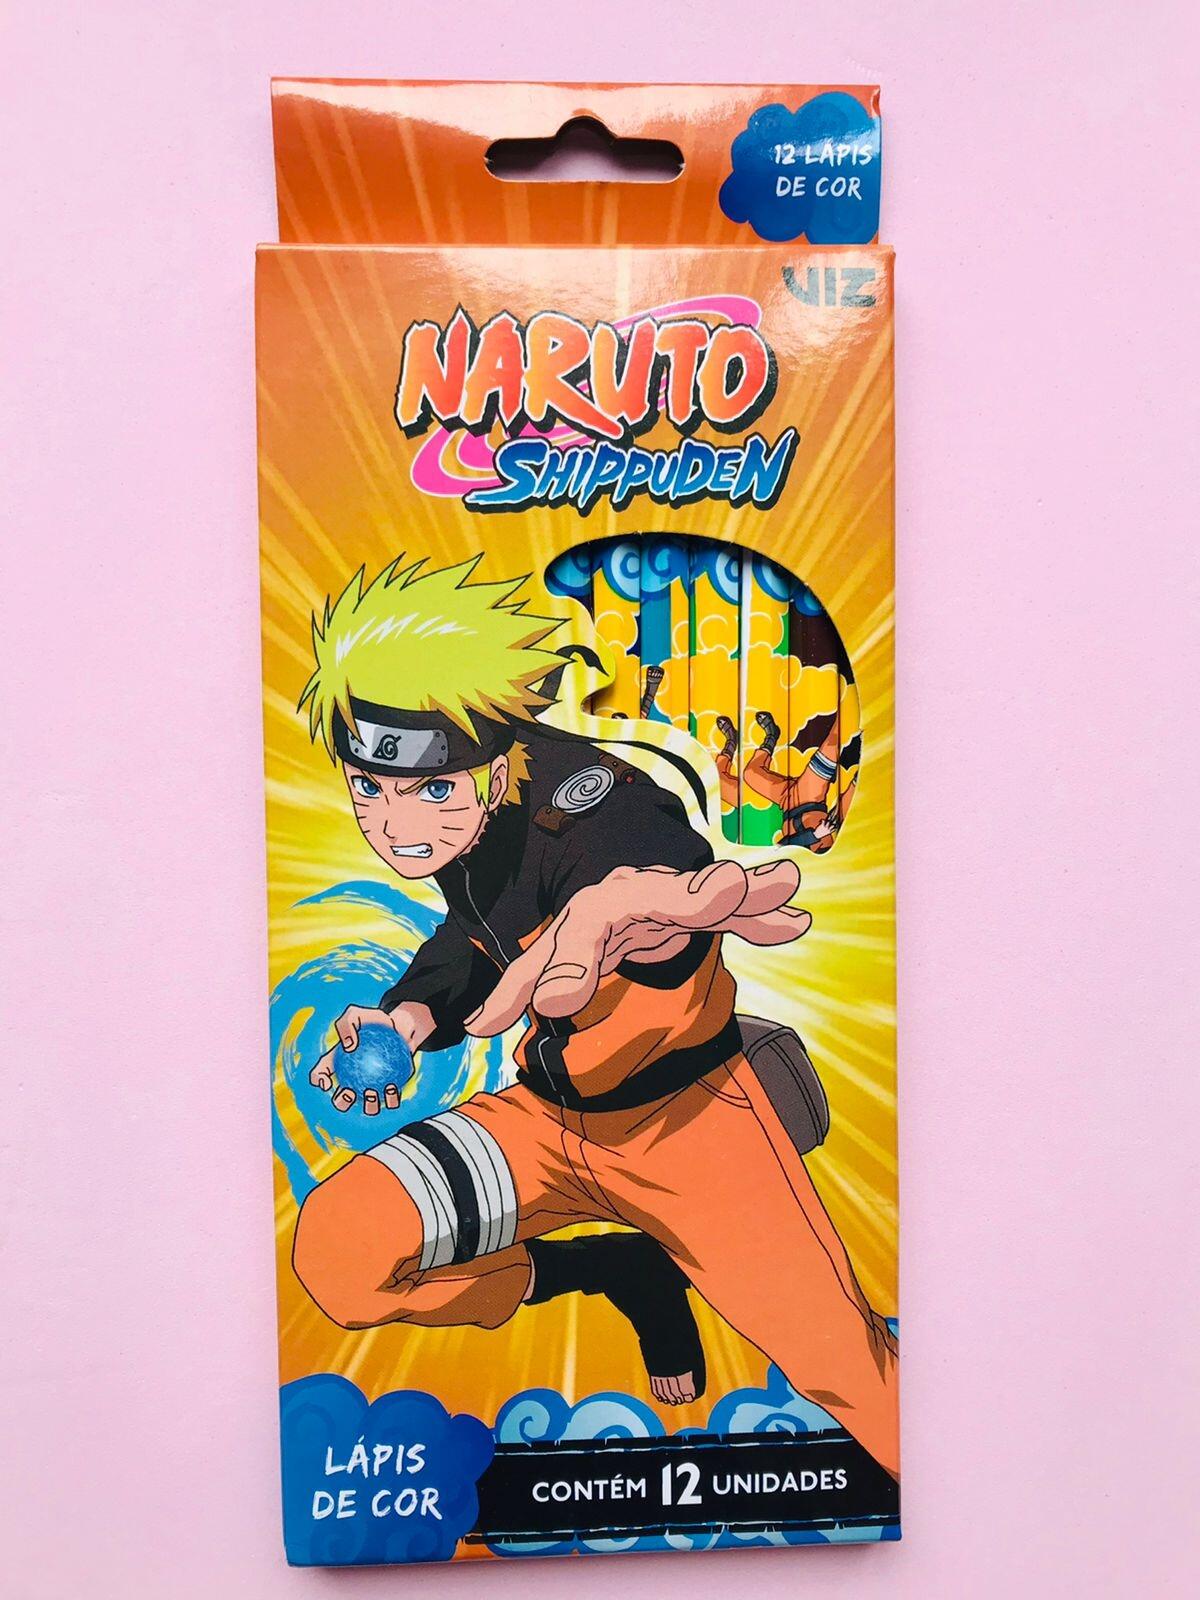 Naruto Shippuden - Os 80 personagens principais da história